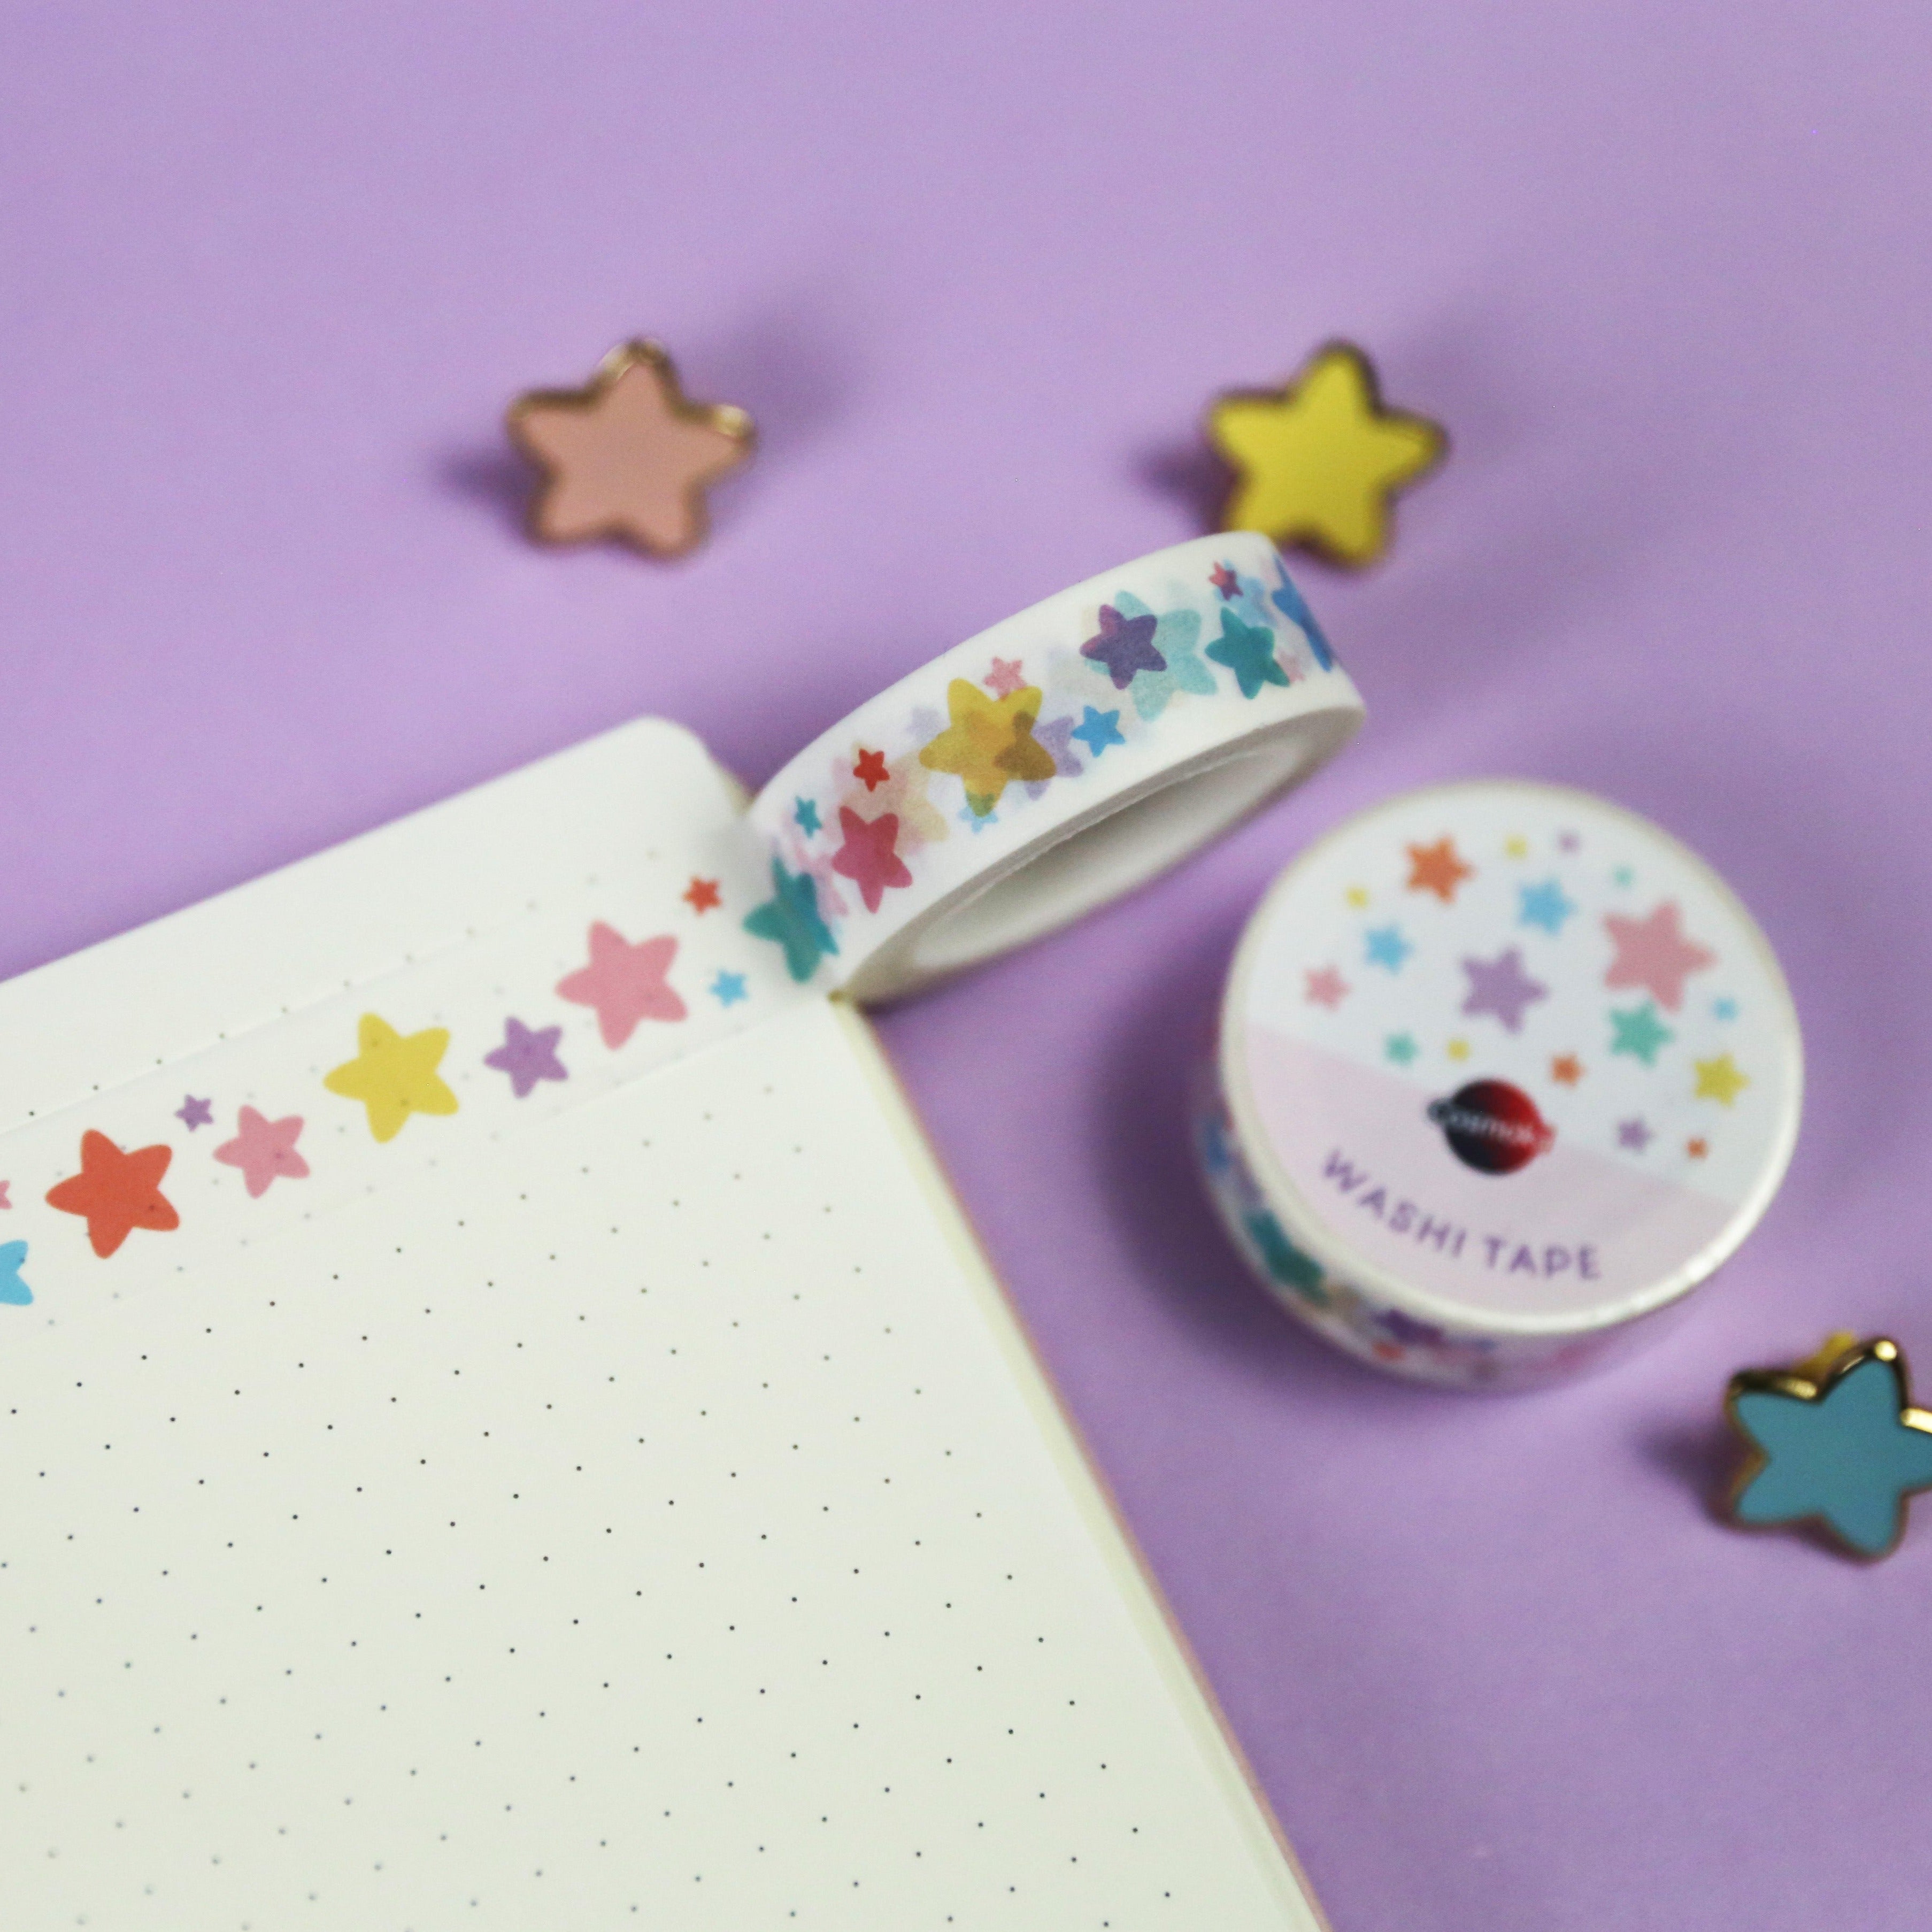 Cute Star Washi Tape